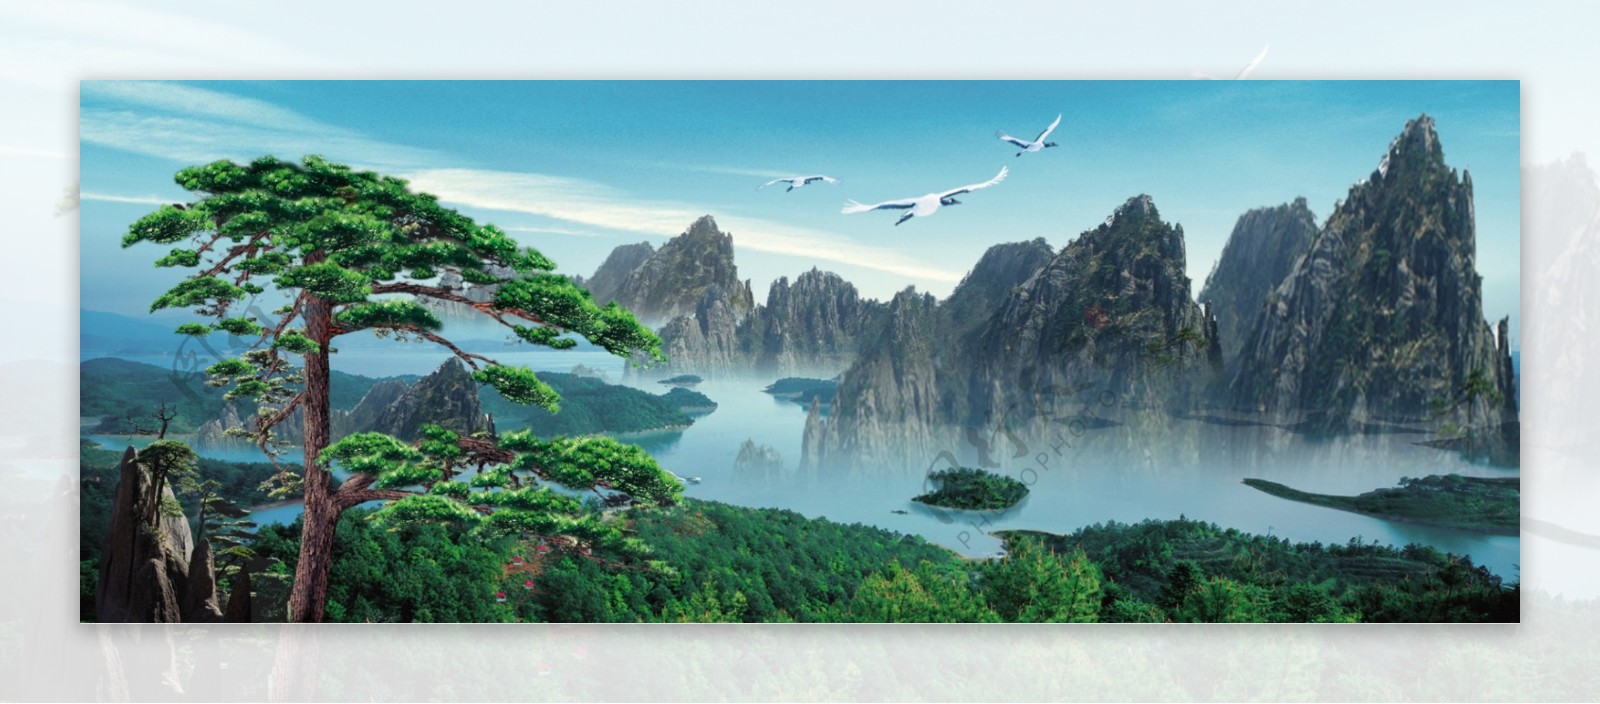 迎客松中堂画图片桂林山水美景